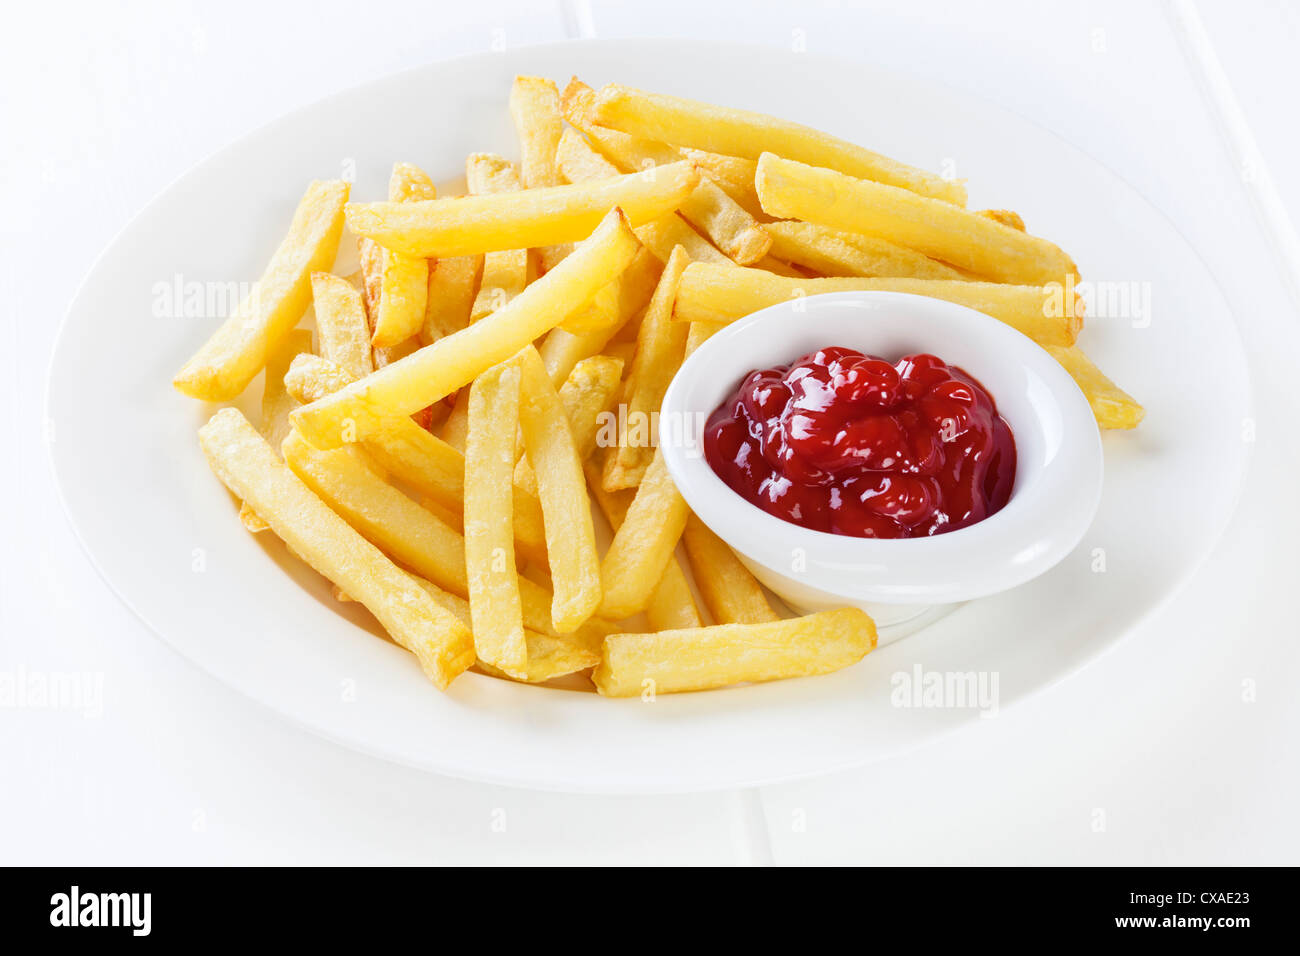 Un plato de papas fritas con ketchup en un pequeño recipiente. Foto de stock